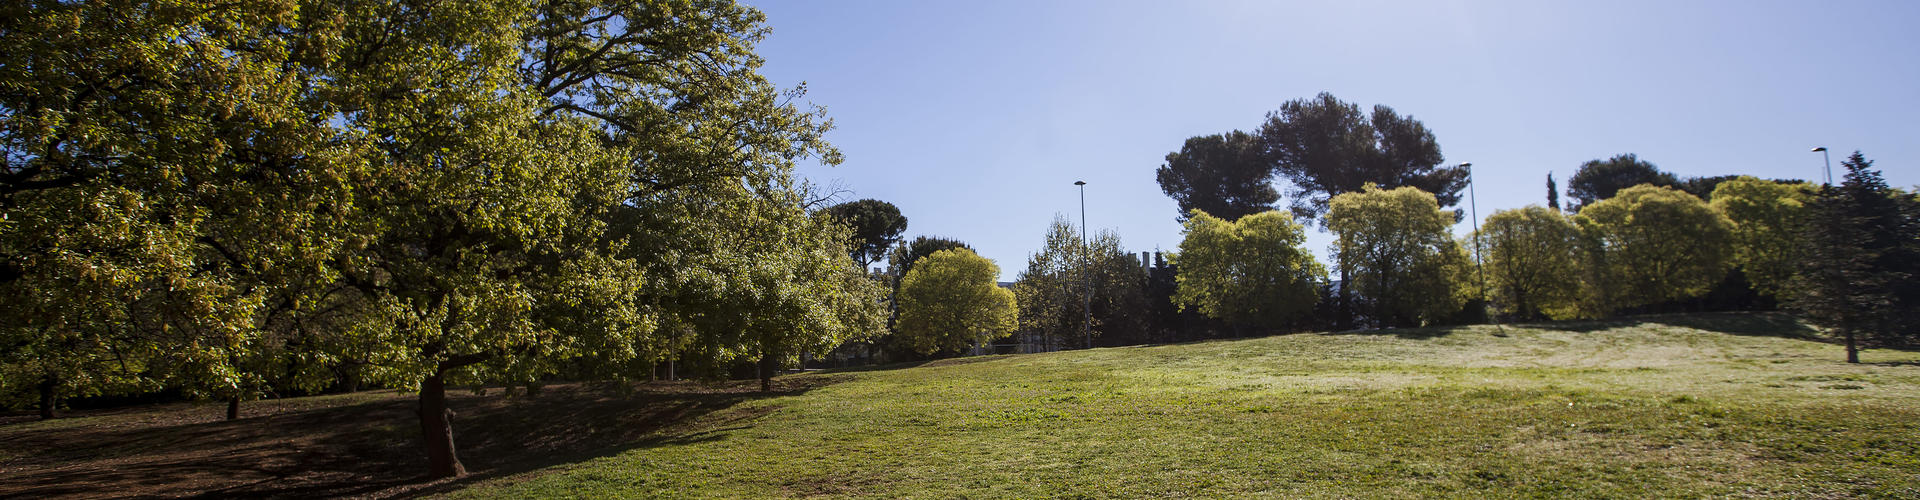 Parc Arboretum Sant Cugat.